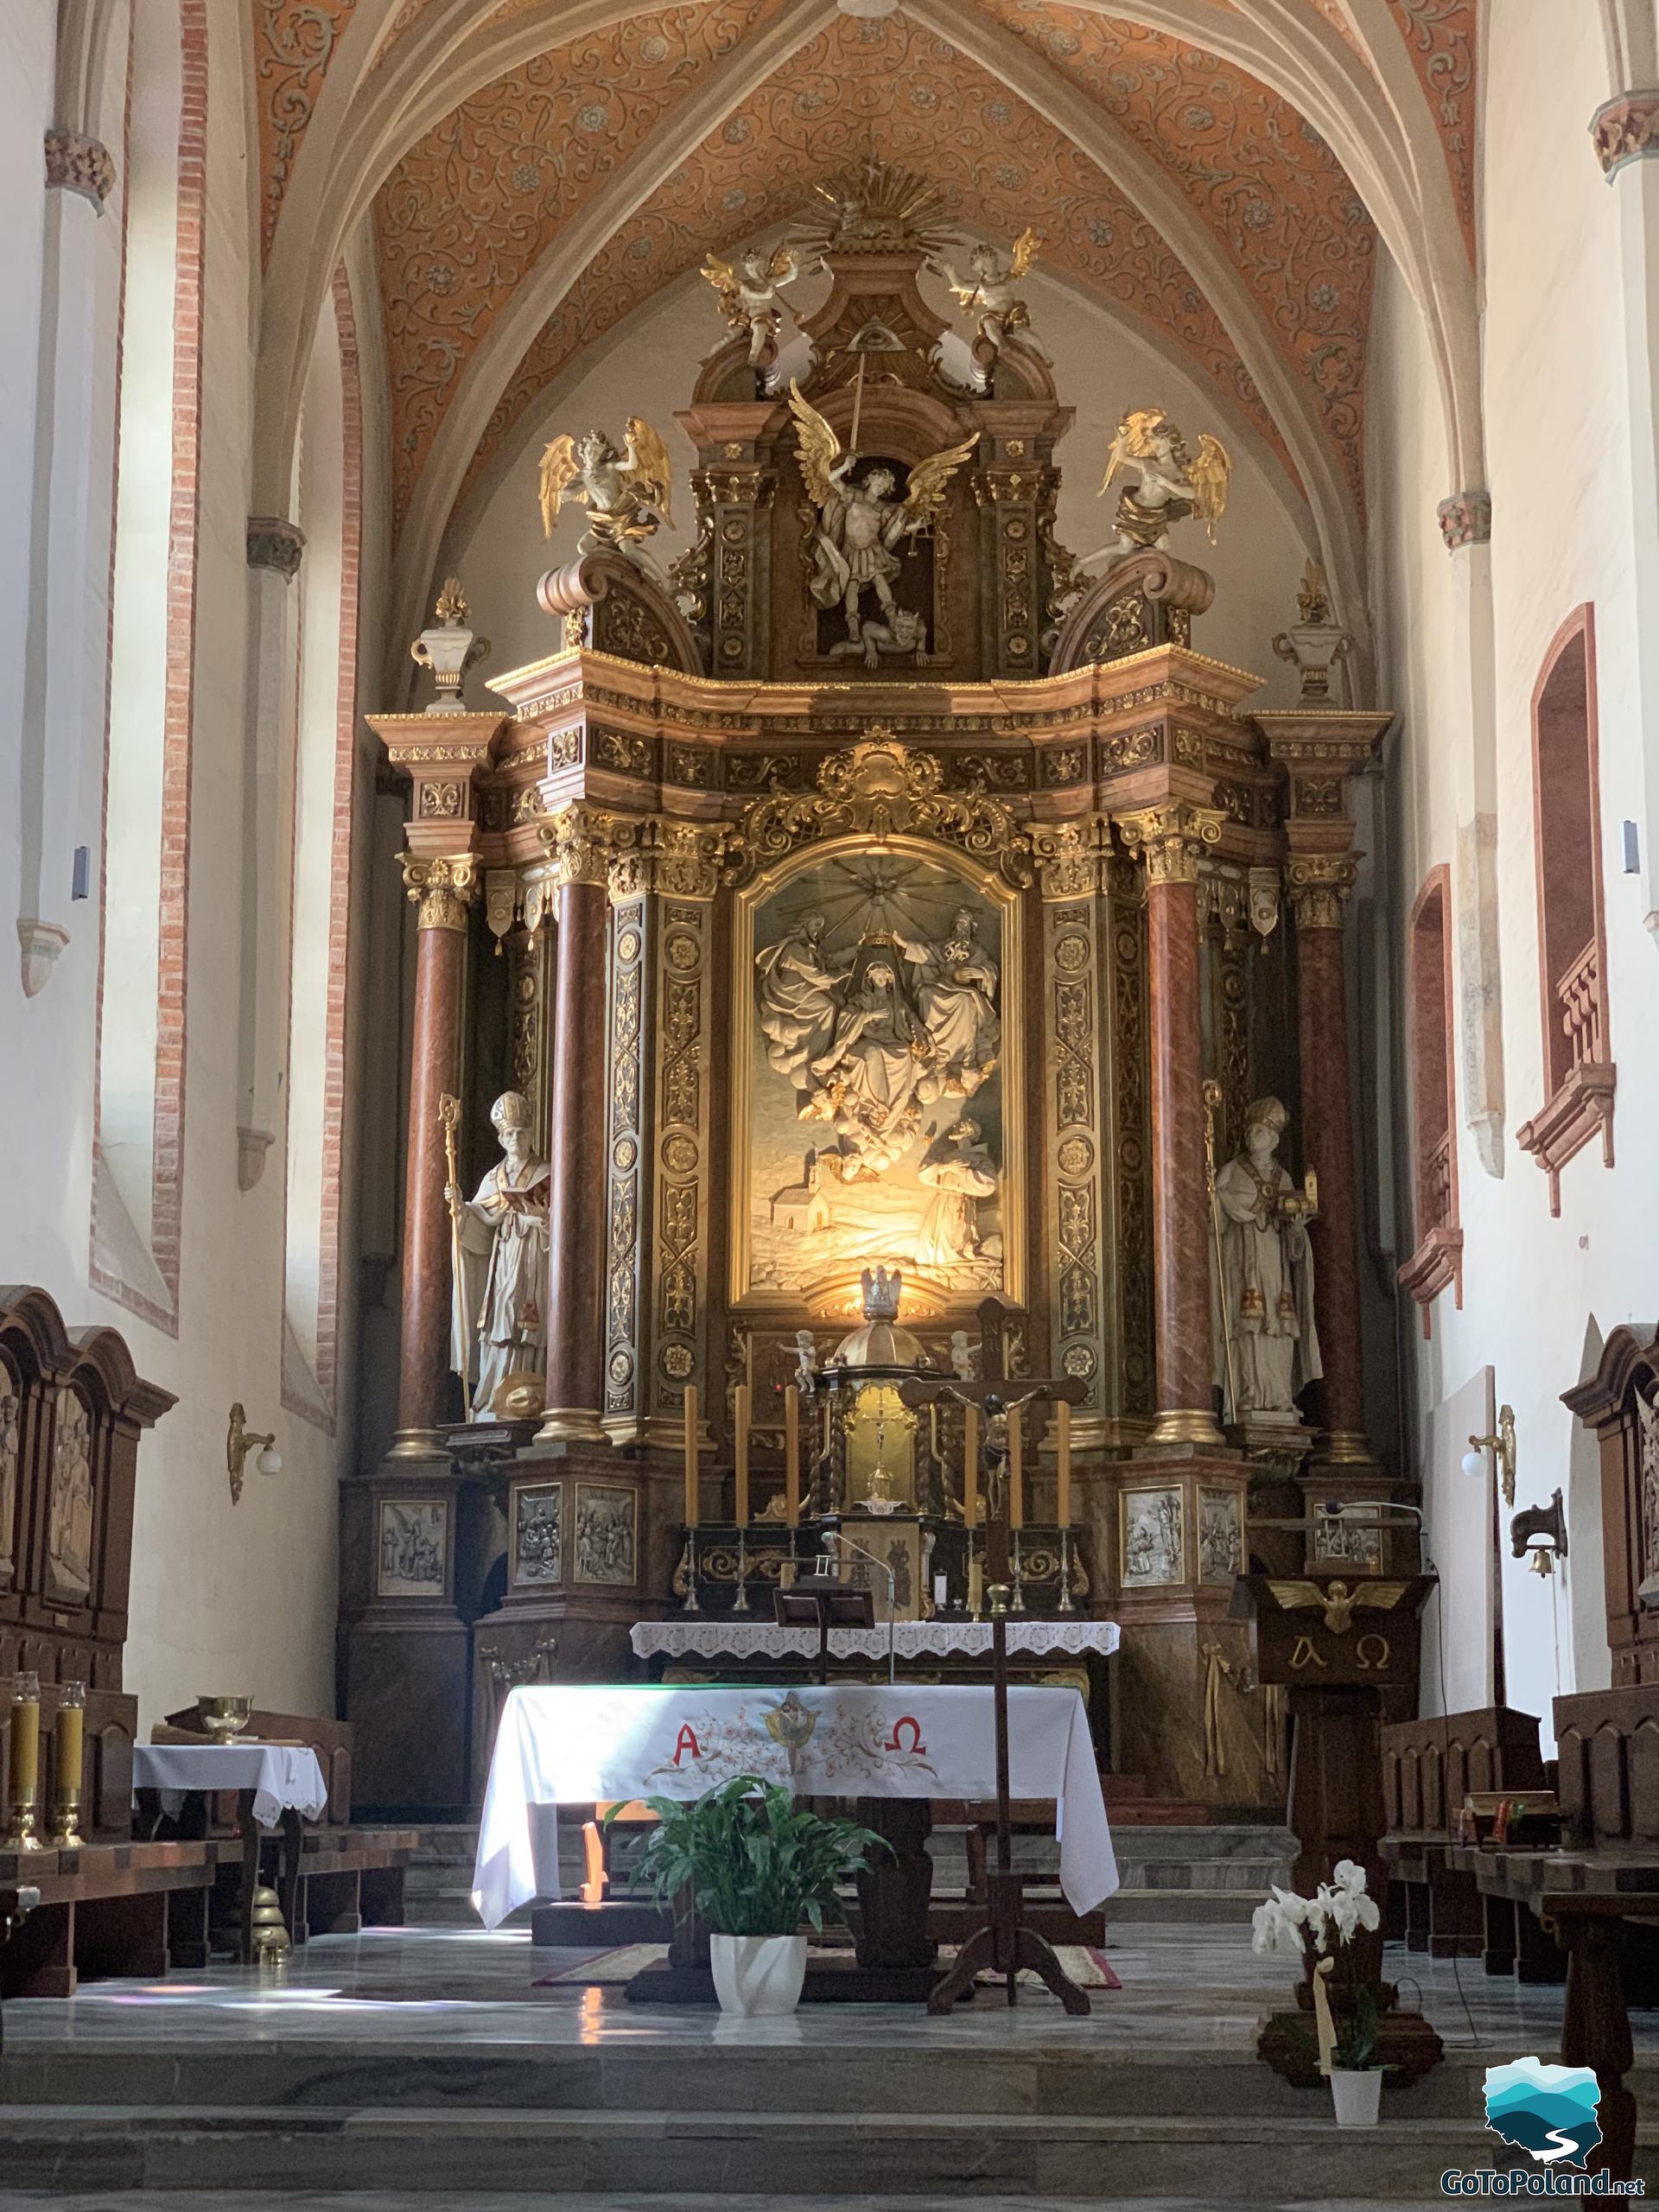 a main altar in a church